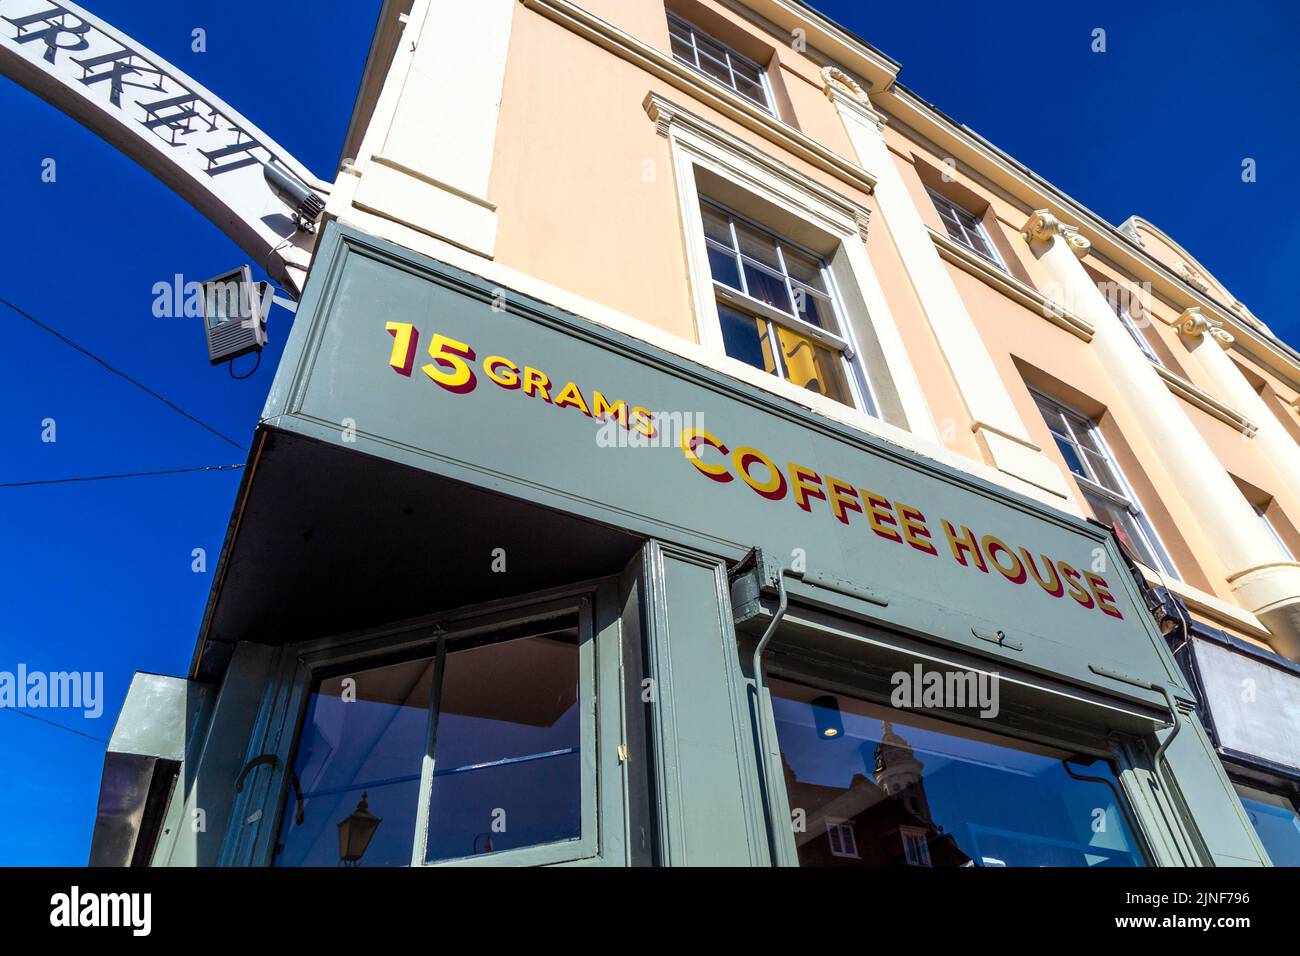 Extérieur du 15Grams Coffee House, Greenwich, Londres, Royaume-Uni Banque D'Images